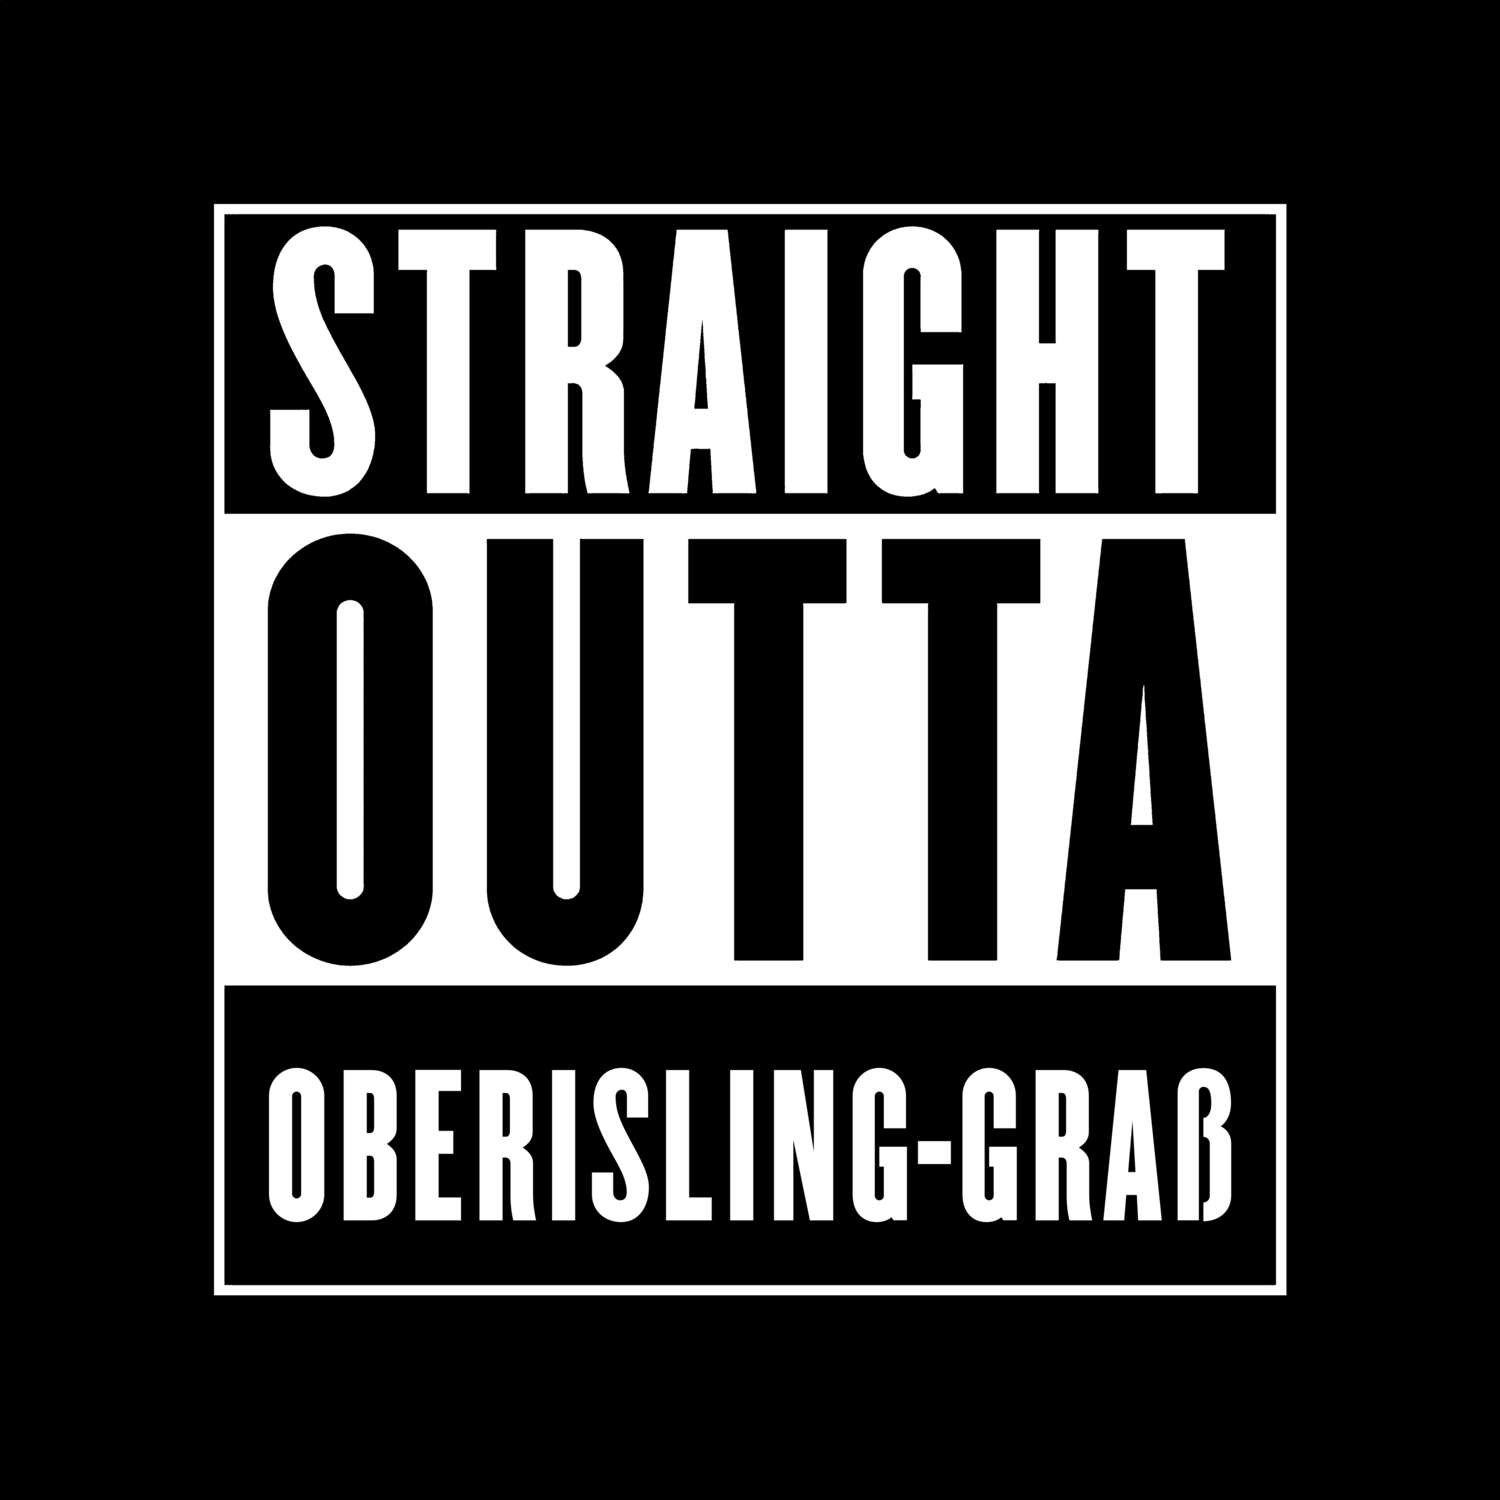 Oberisling-Graß T-Shirt »Straight Outta«